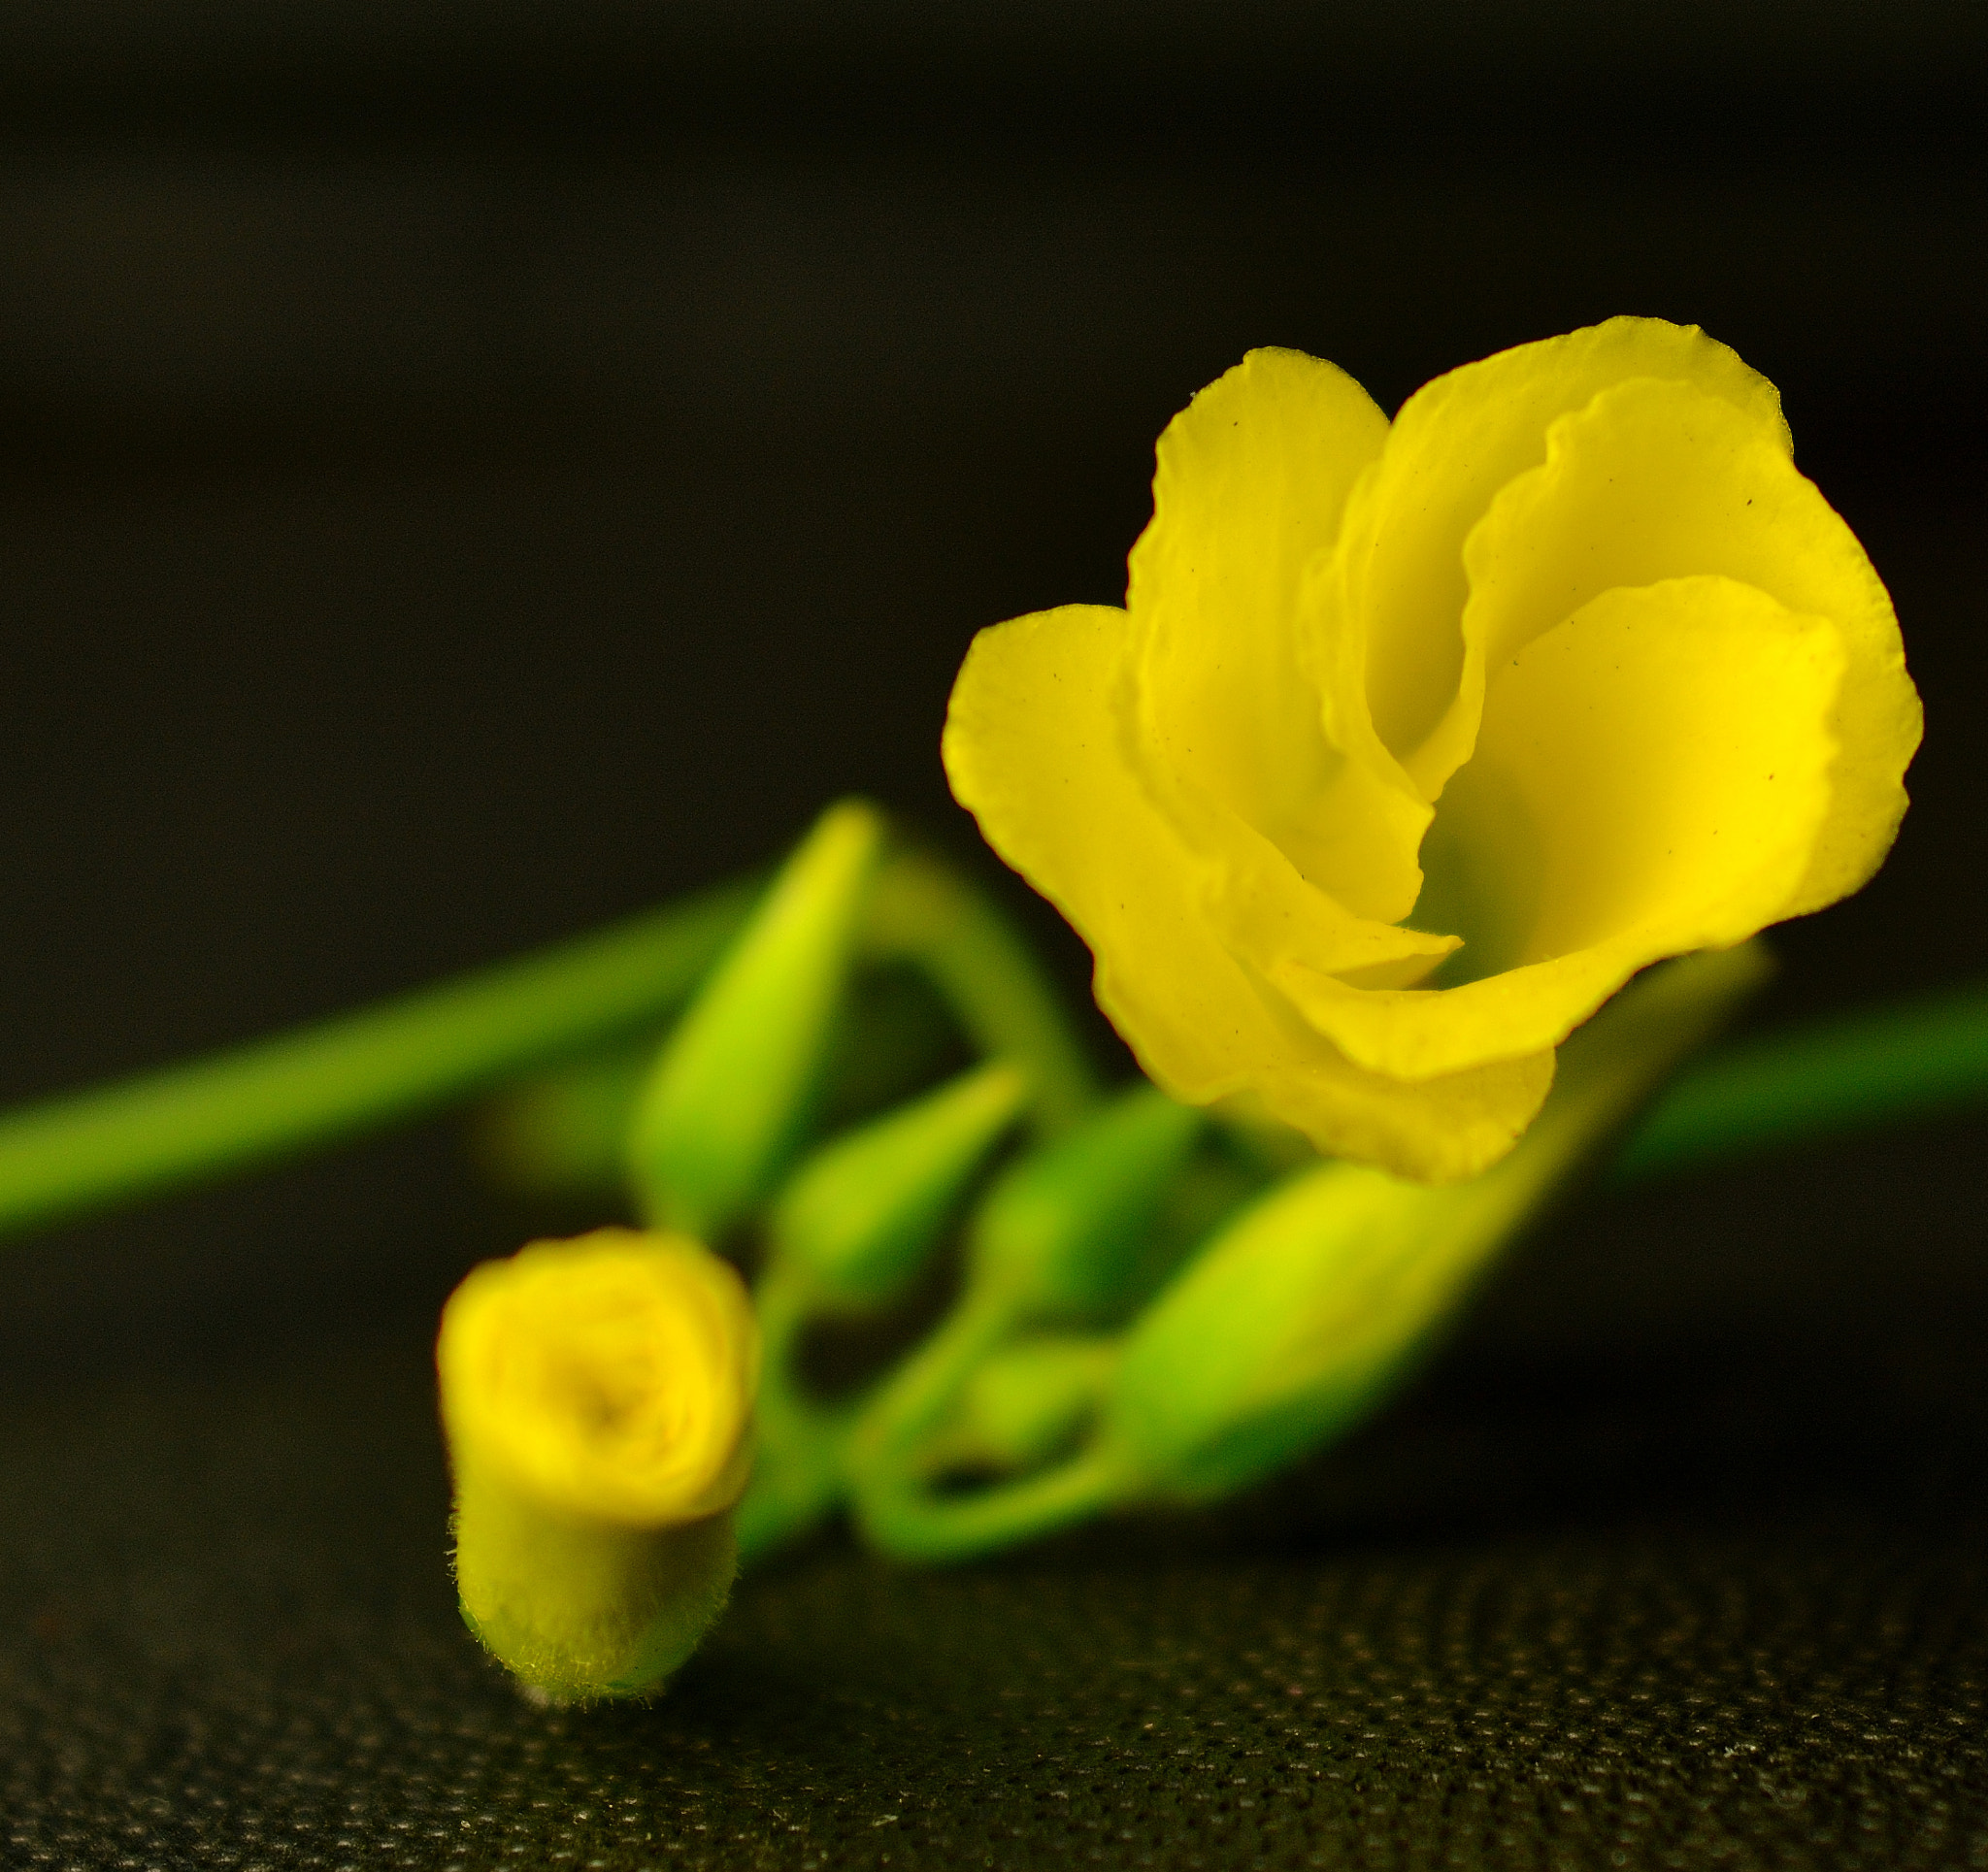 Nikon D7100 + AF Zoom-Nikkor 28-85mm f/3.5-4.5 sample photo. Springtime flower photography